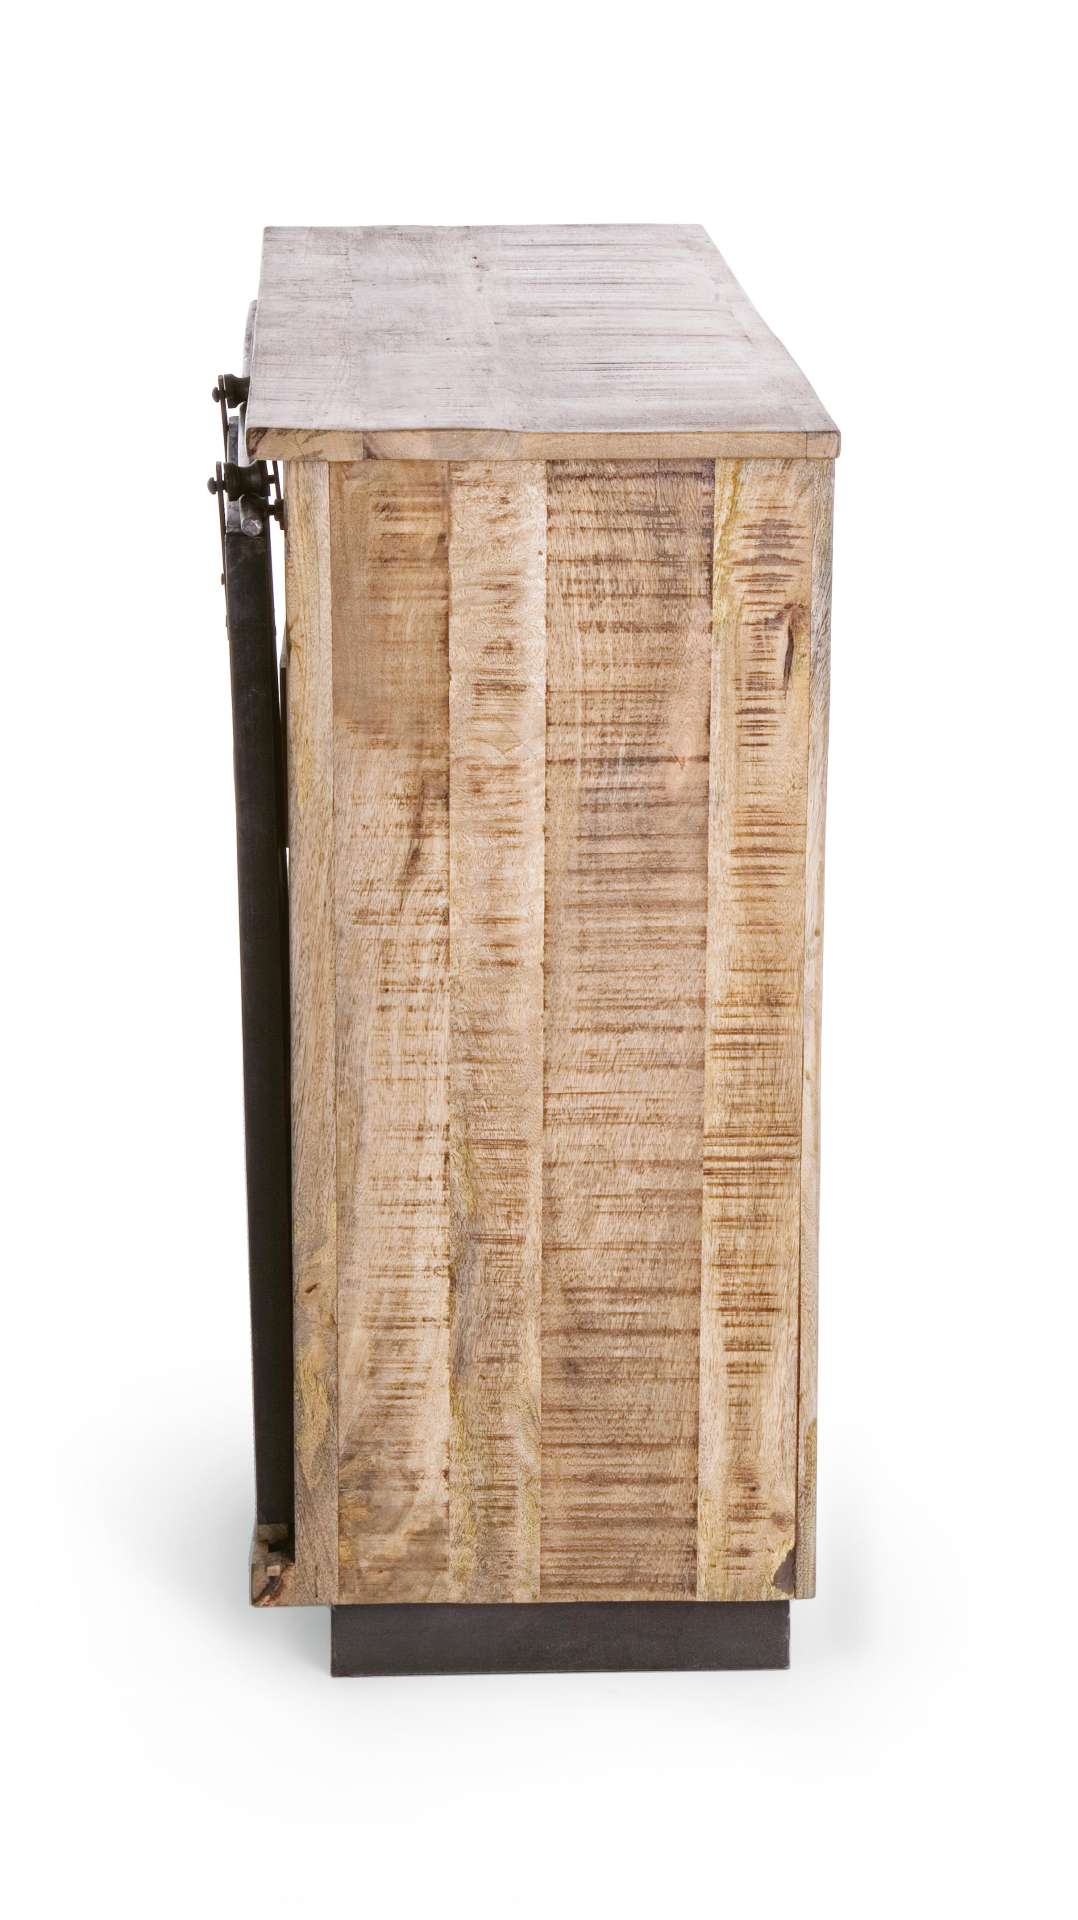 Die Kommode Tudor überzeugt mit ihrem klassischen Design. Gefertigt wurde sie aus Mango-Holz, welches einen natürlichen Farbton besitzt. Das Gestell ist auch aus Mango-Holz. Die Kommode verfügt über eine Tür und vier Schubladen. Die Breite beträgt 90 cm.